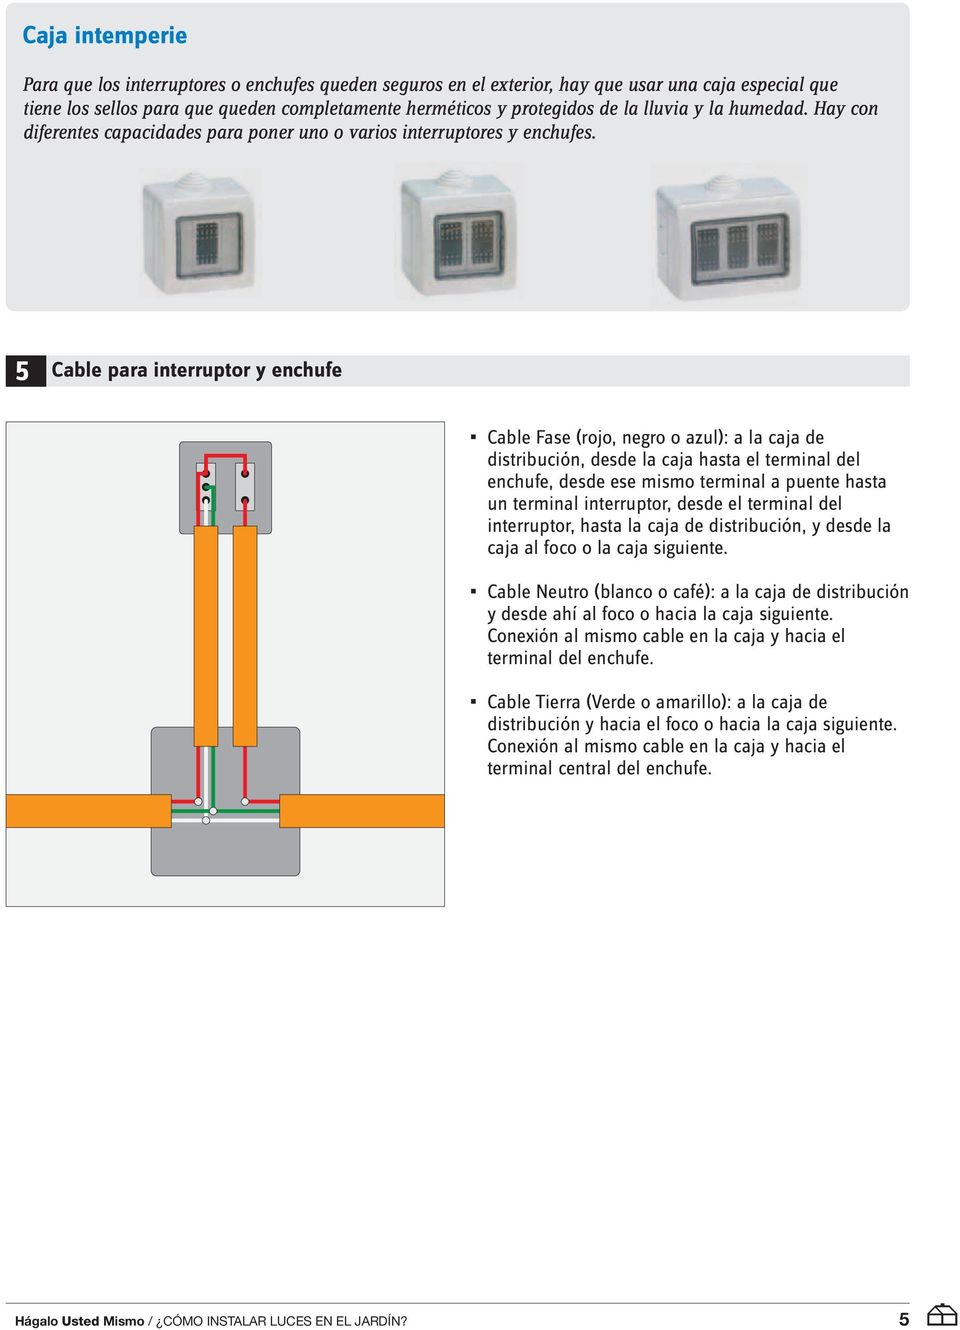 5 cable para interruptor y enchufe Cable Fase (rojo, negro o azul): a la caja de distribución, desde la caja hasta el terminal del enchufe, desde ese mismo terminal a puente hasta un terminal